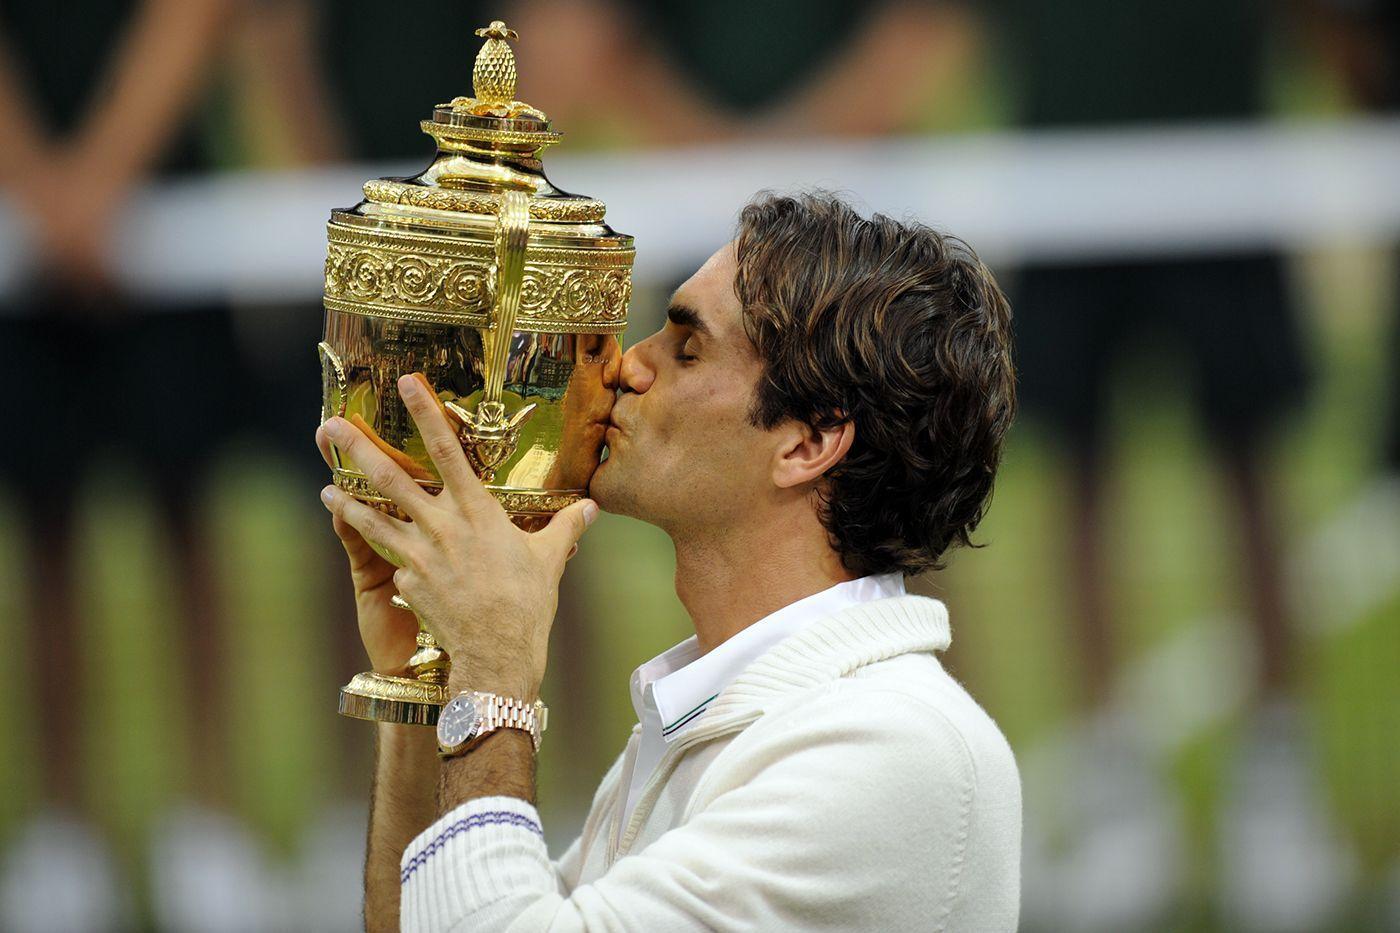 image about Roger Federer. Roger Federer